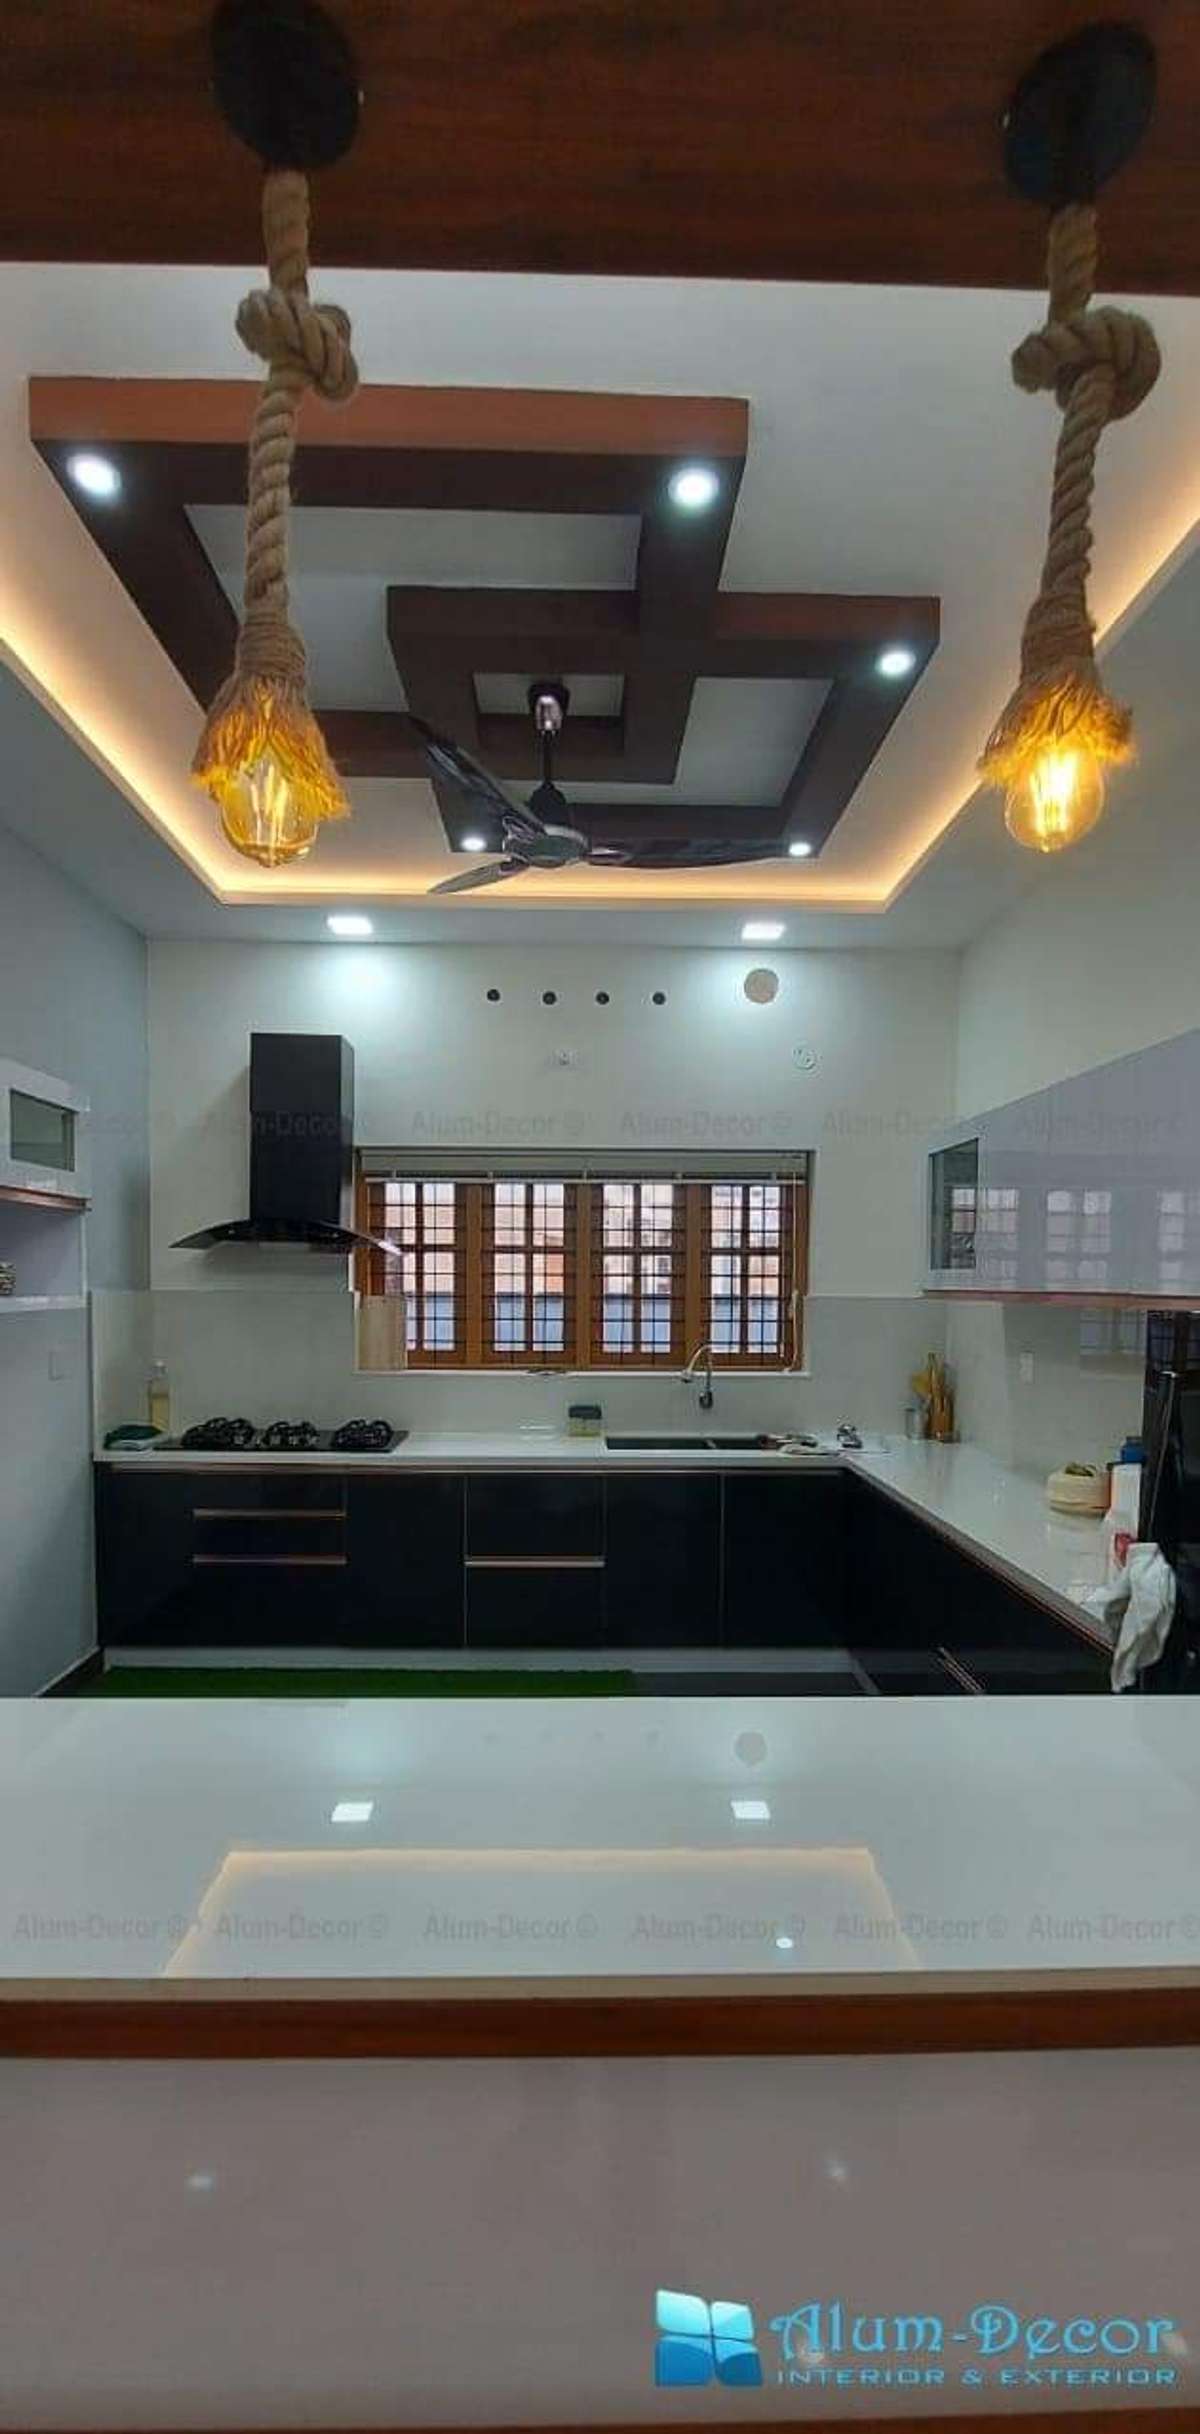 Kitchen, Storage Designs by Carpenter ЁЯЩП рдлреЙрд▓реЛ рдХрд░реЛ рджрд┐рд▓реНрд▓реА рдХрд╛рд░рдкреЗрдВрдЯрд░ рдХреЛ, Delhi | Kolo